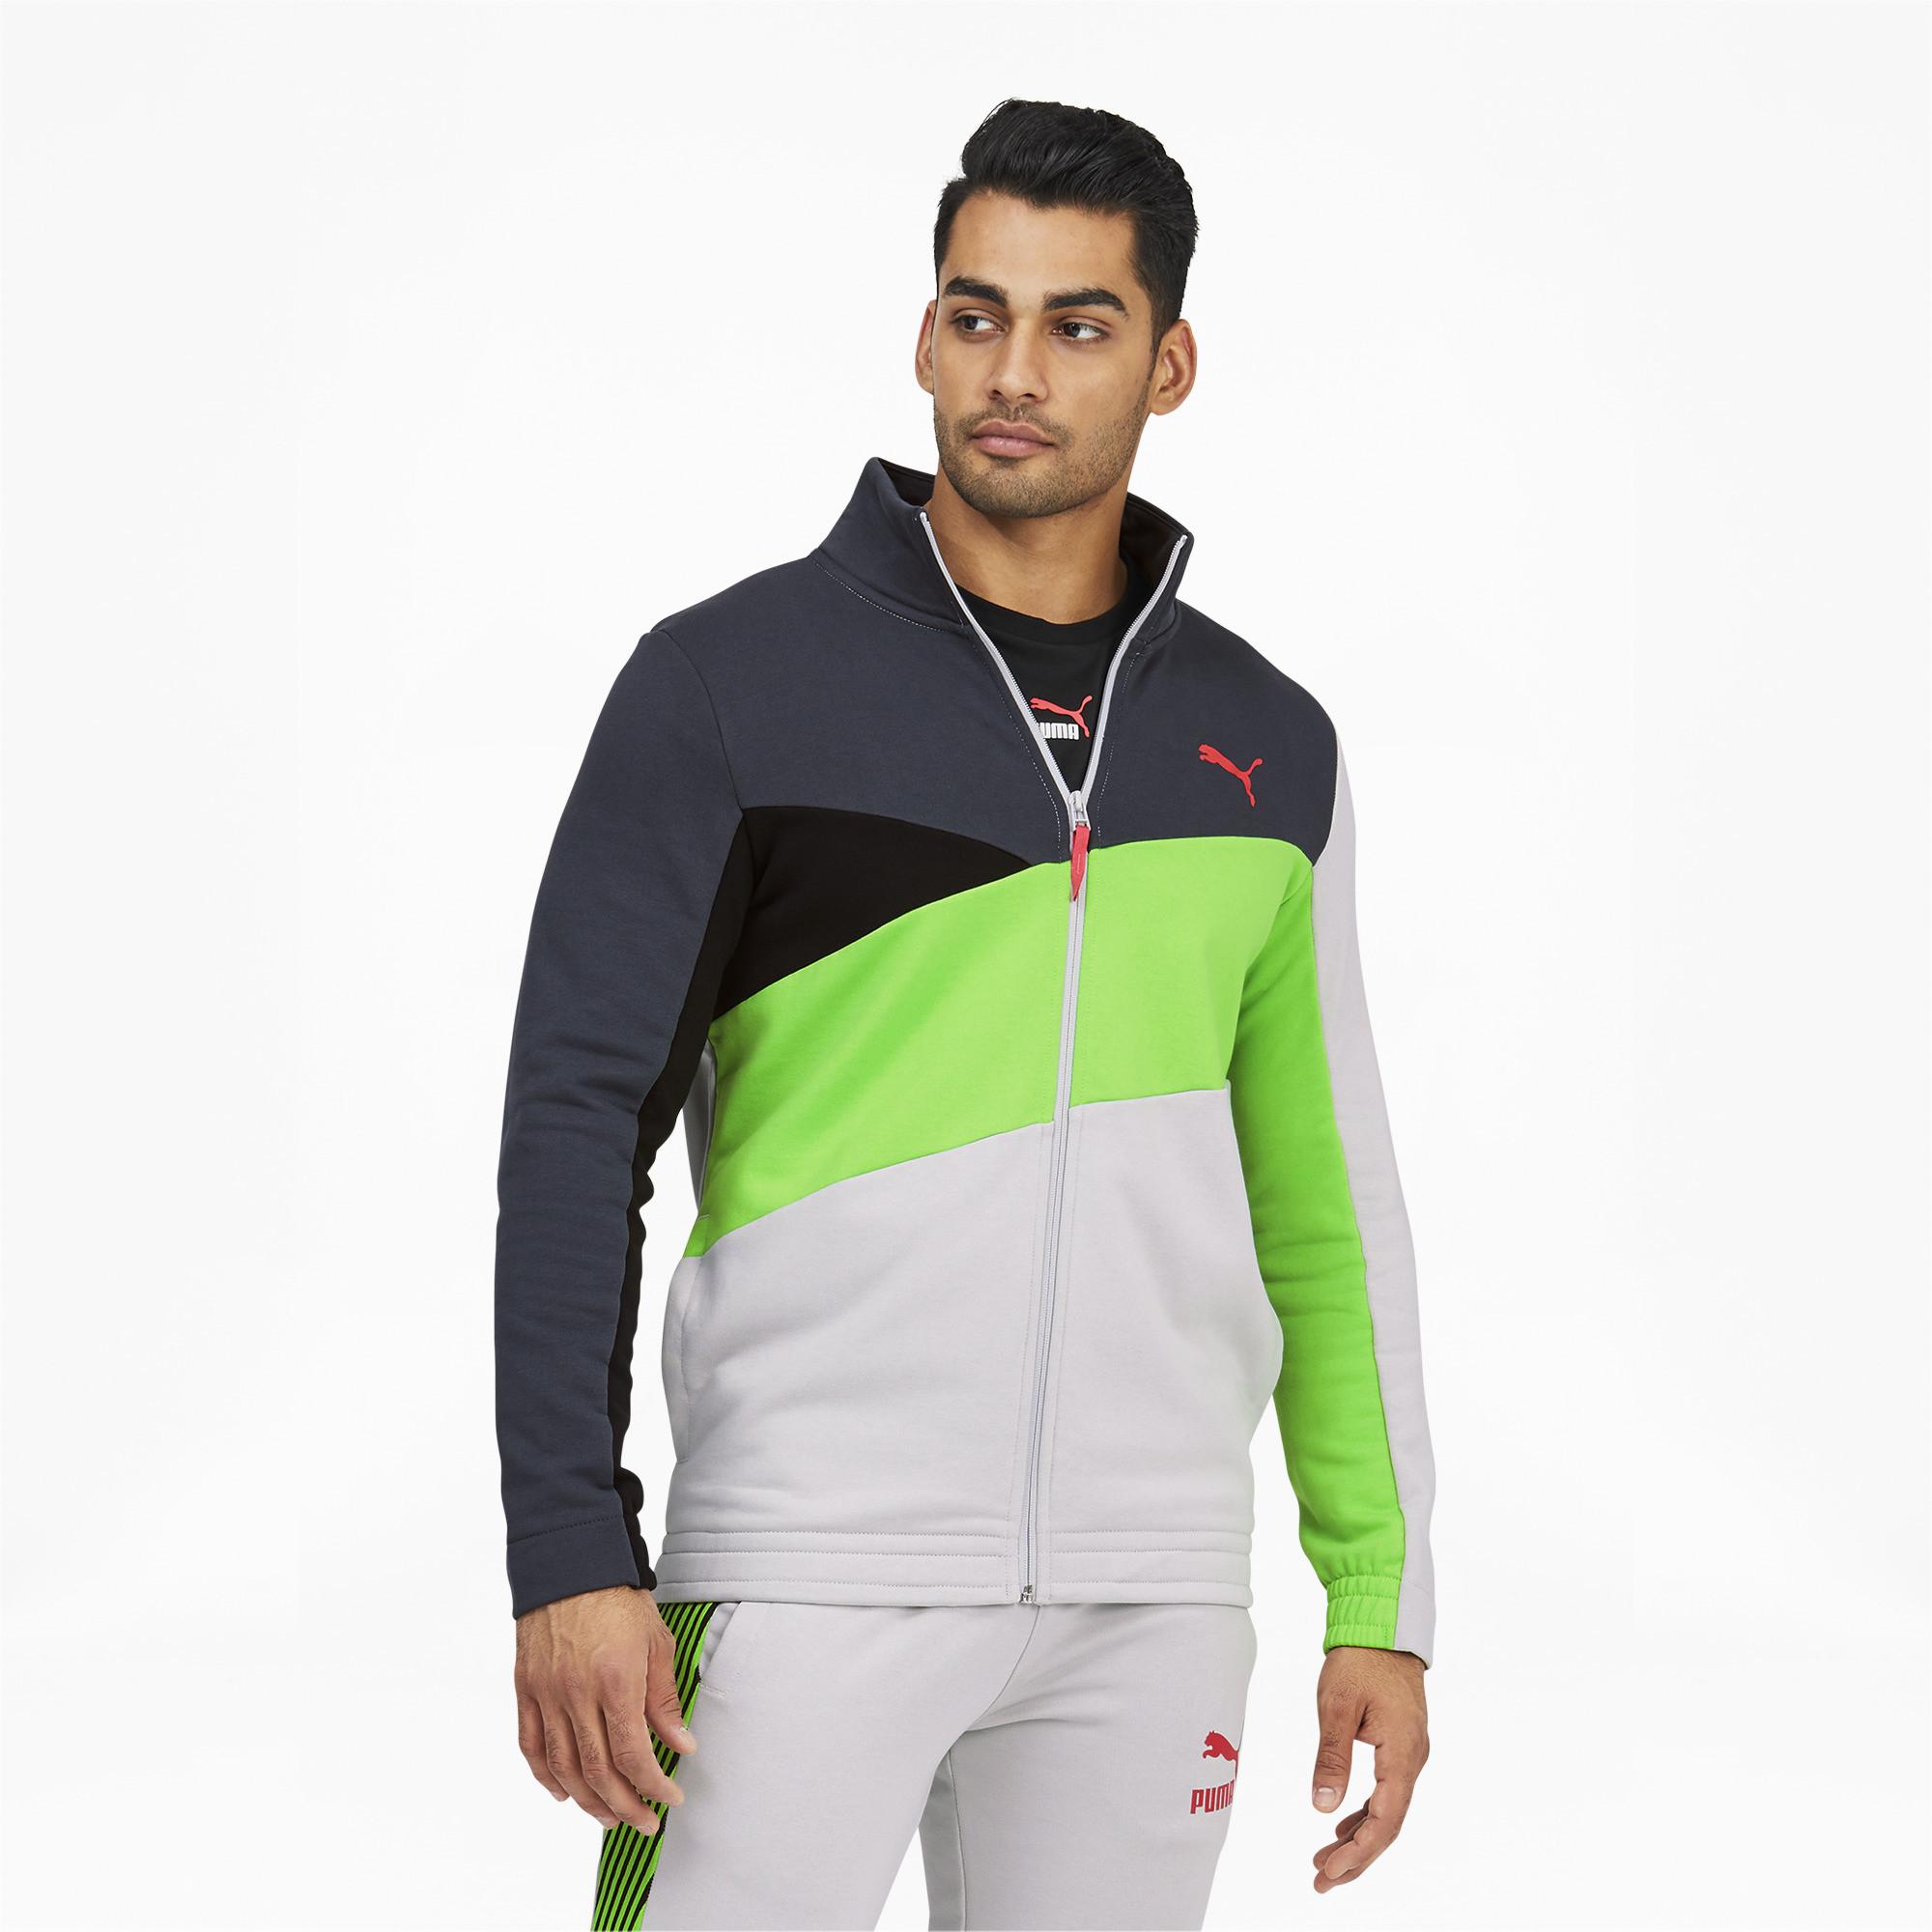 PUMA Dazed Intl Track Top Jacket in Gray Violet (Green) for Men - Lyst